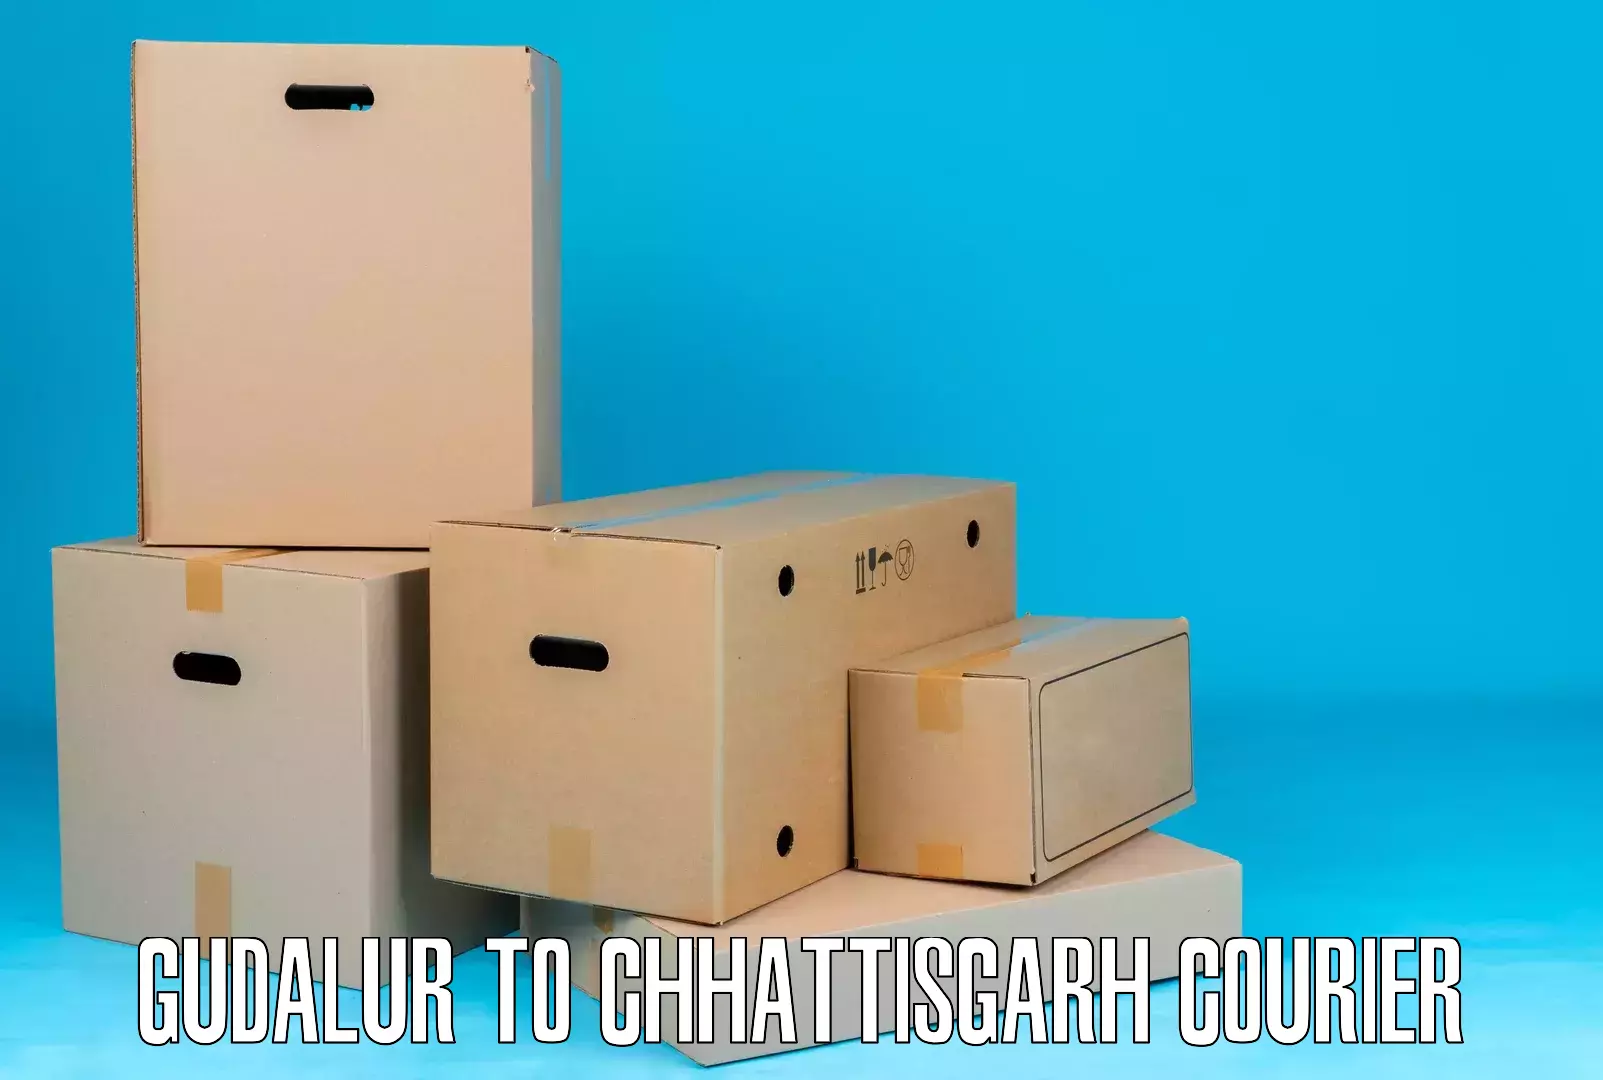 Logistics service provider Gudalur to Chhattisgarh